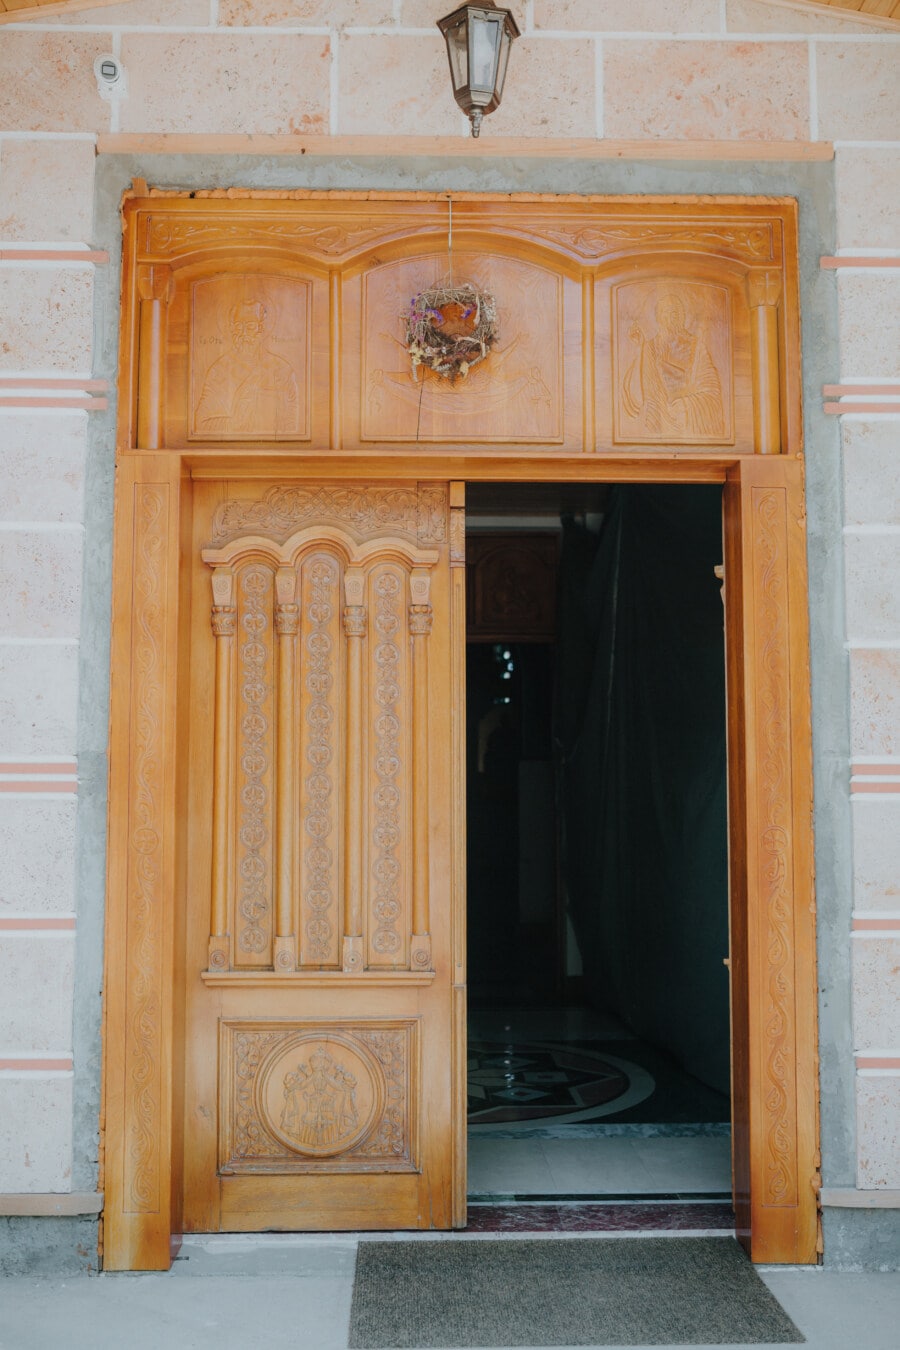 вход, Шлюз, Портал, передняя дверь, монастырь, столярные изделия, дверной проем, двери, архитектура, дерево